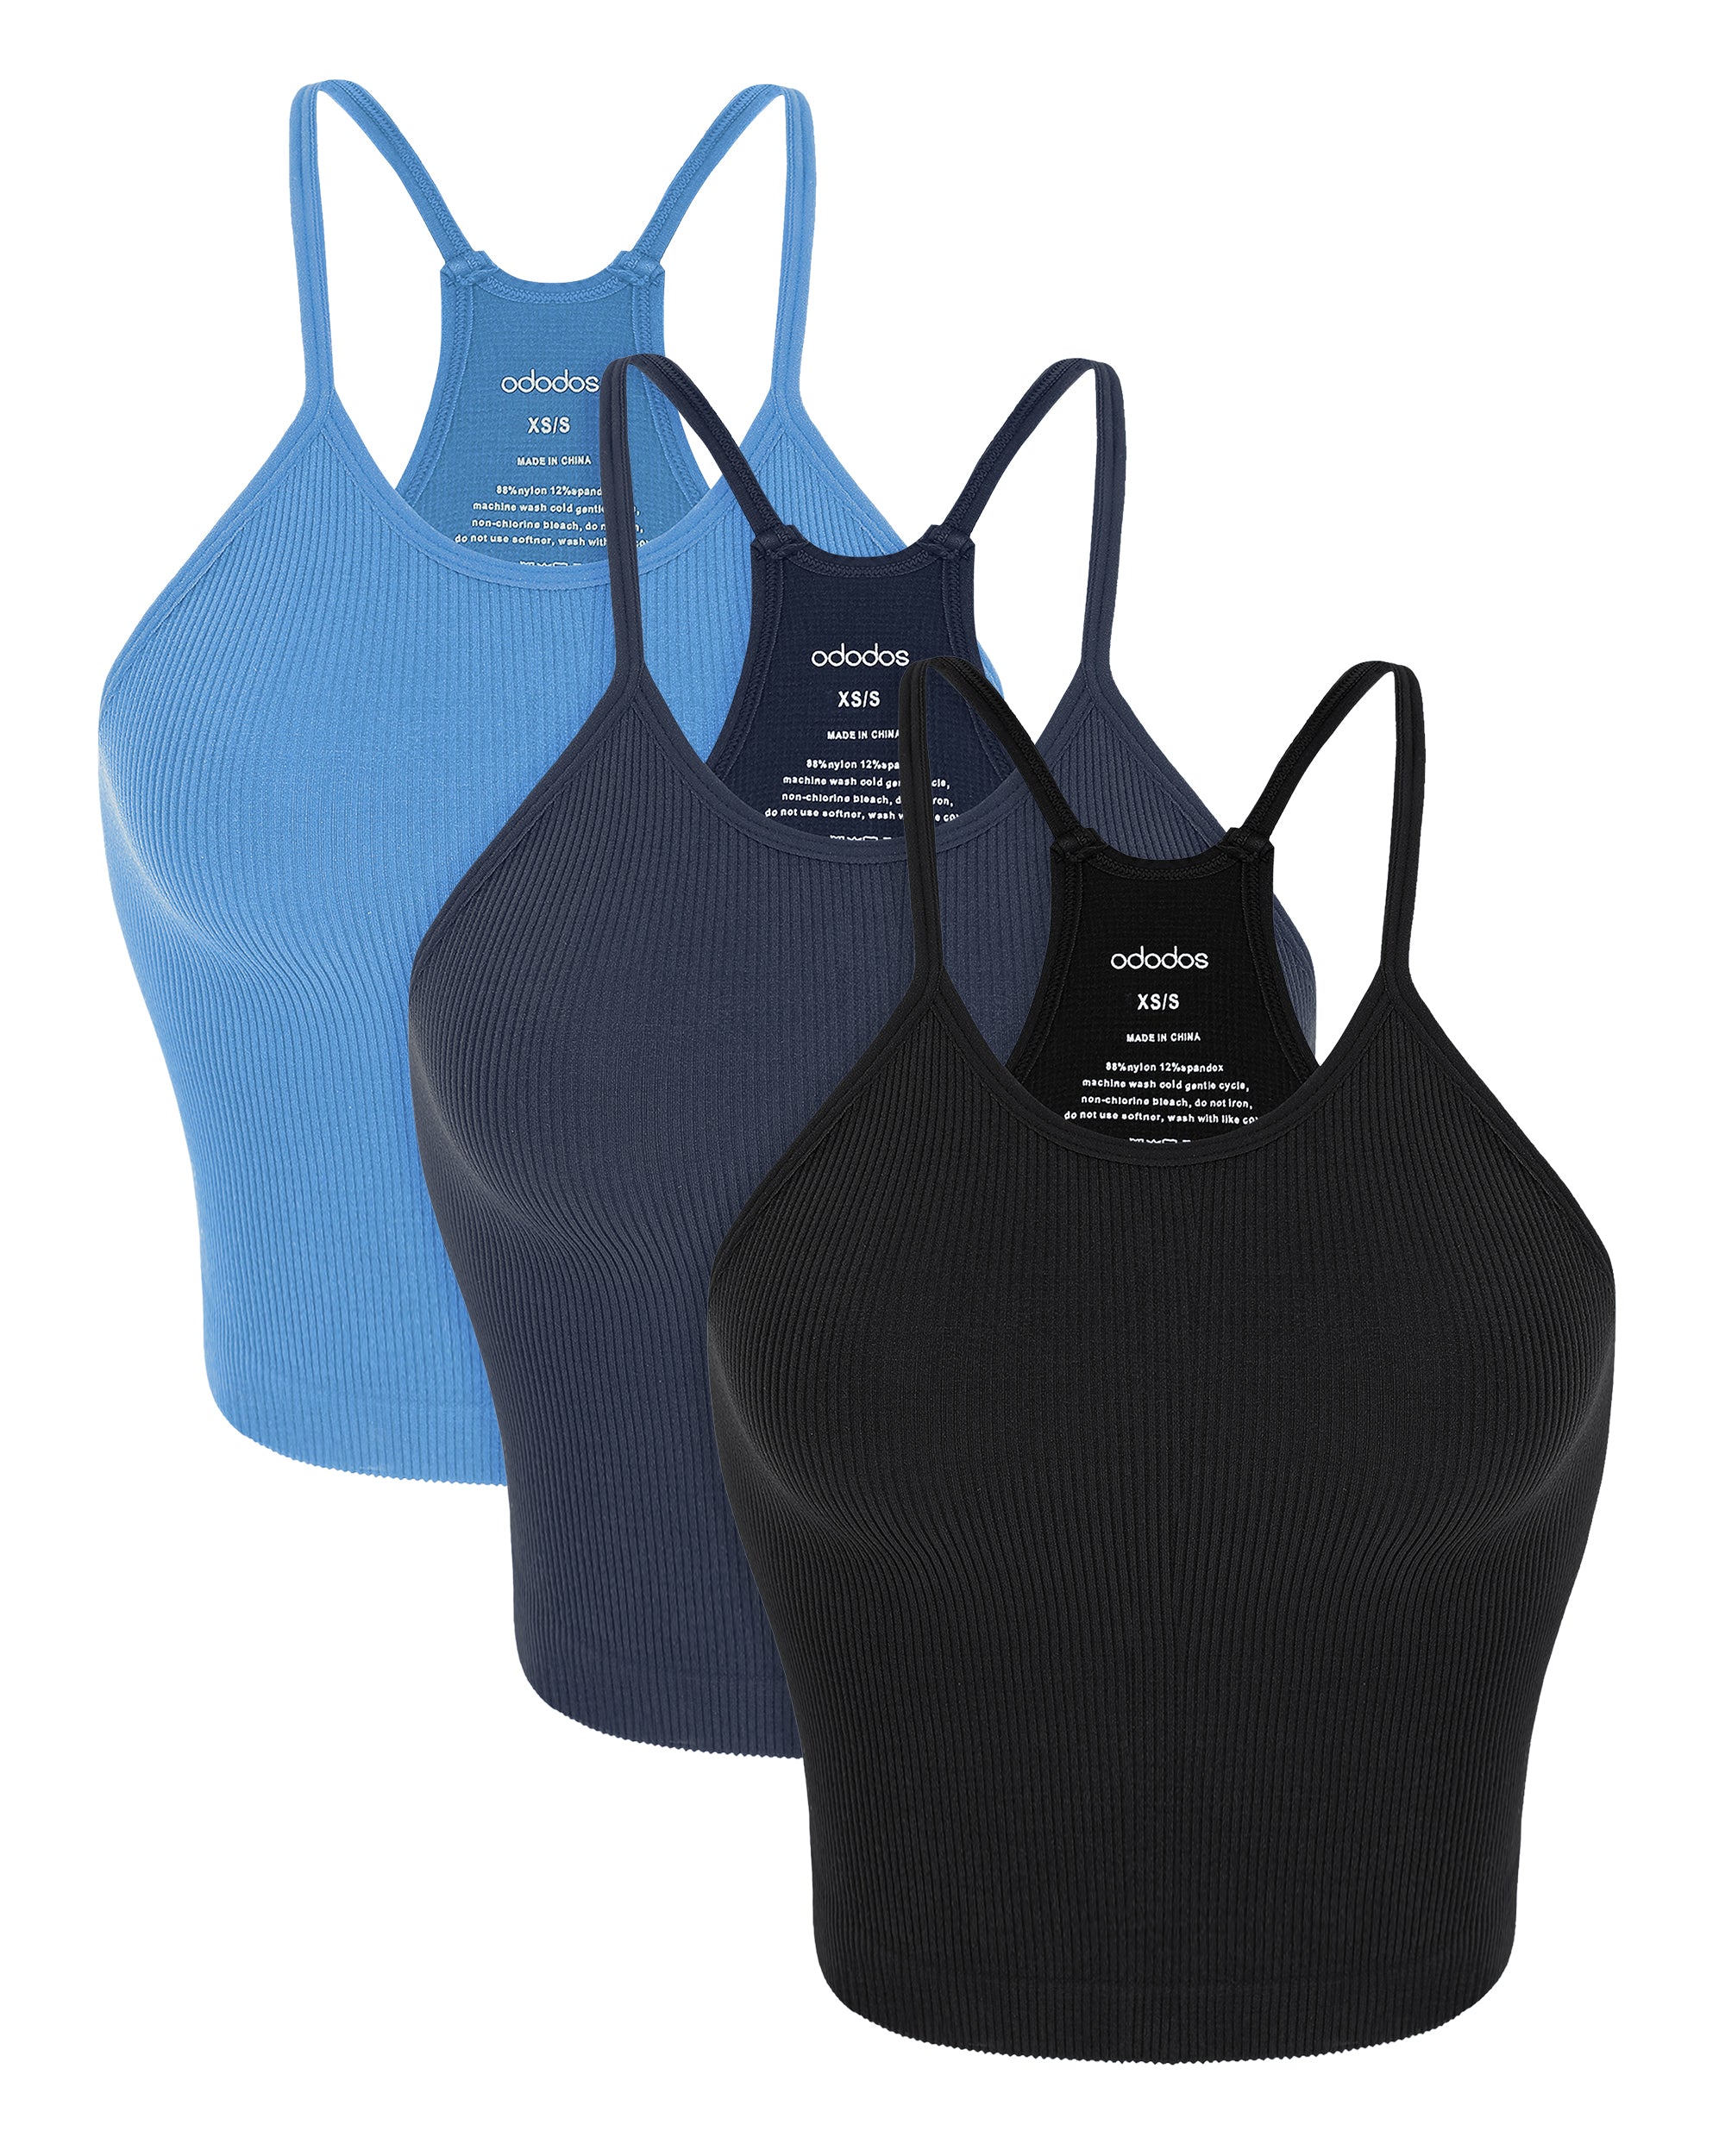 3-Pack Seamless Rib-Knit Camisole Black+Navy+Blue - ododos